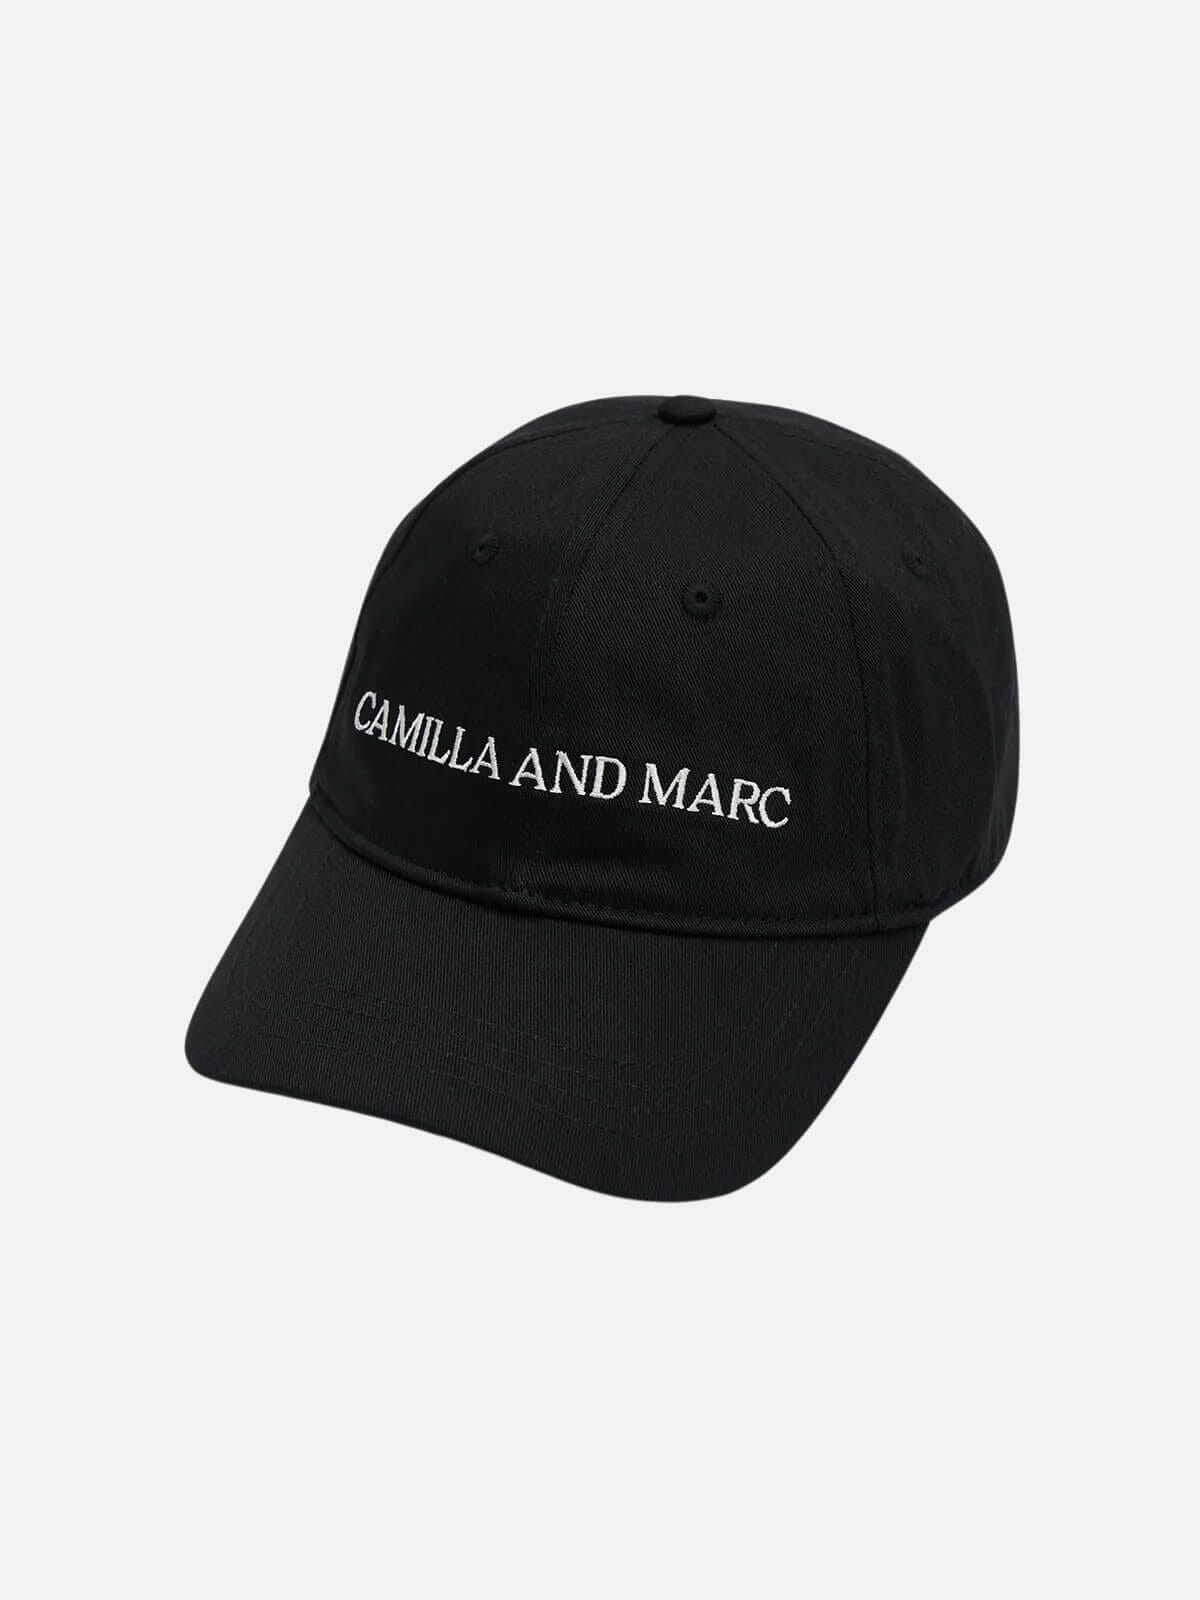 Camilla and Marc | Asher Classic Cap - Black | Perlu